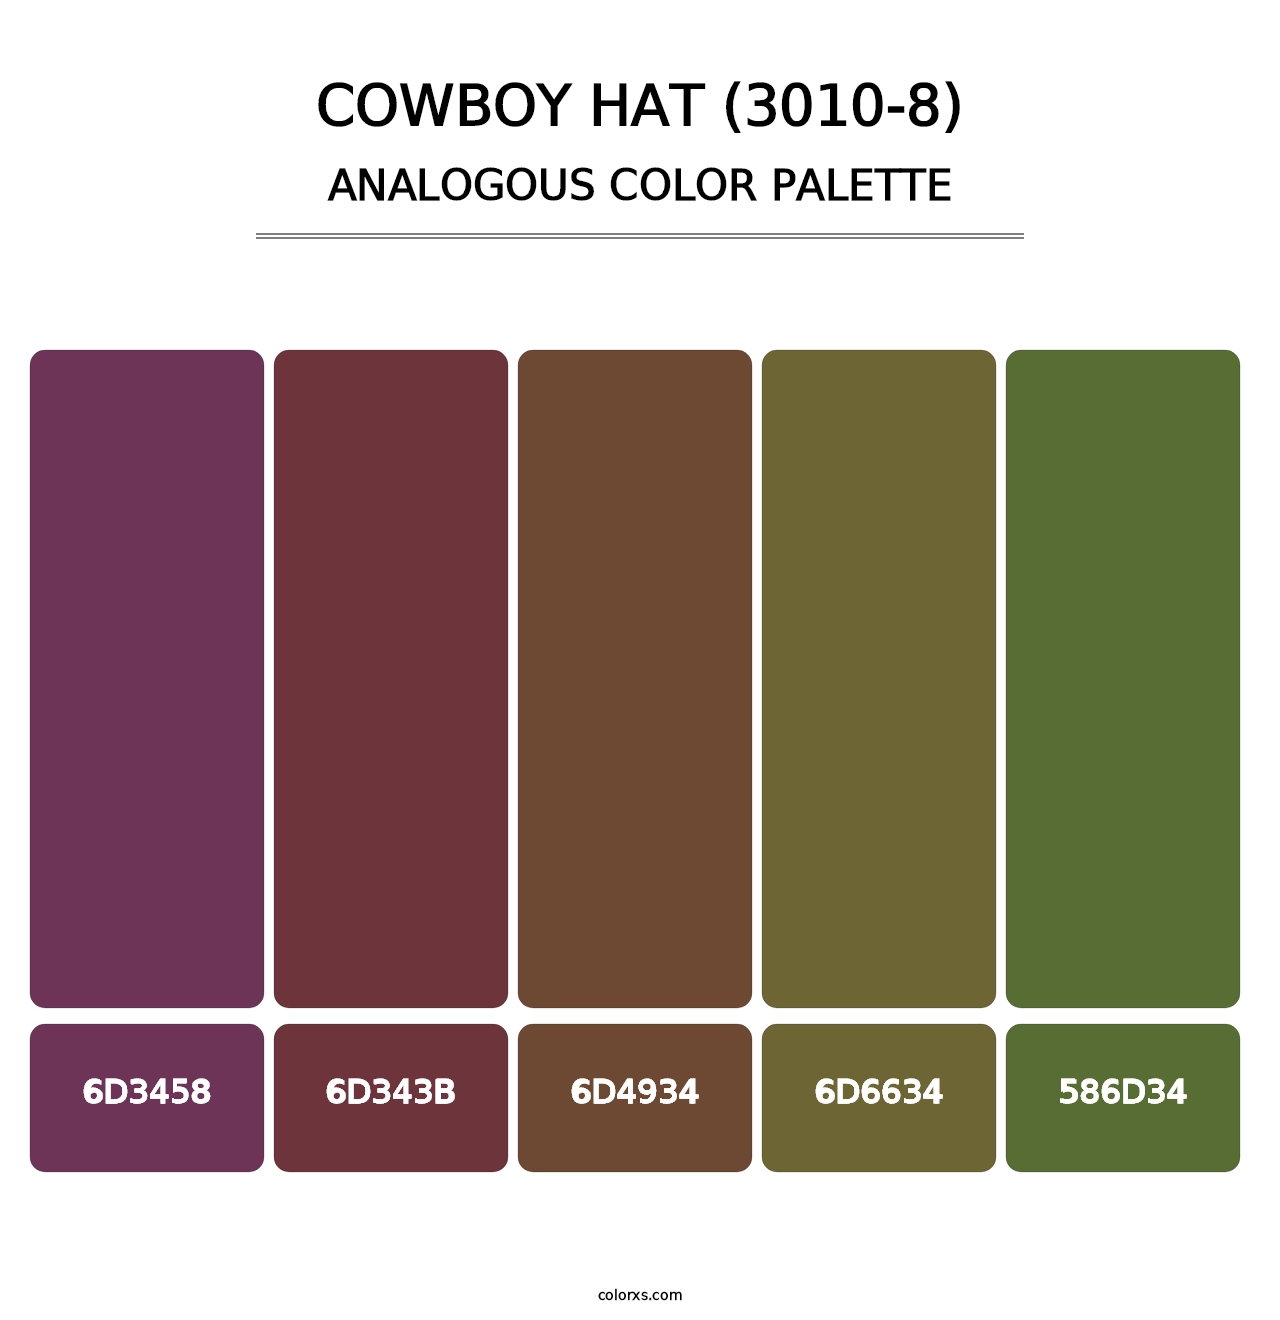 Cowboy Hat (3010-8) - Analogous Color Palette